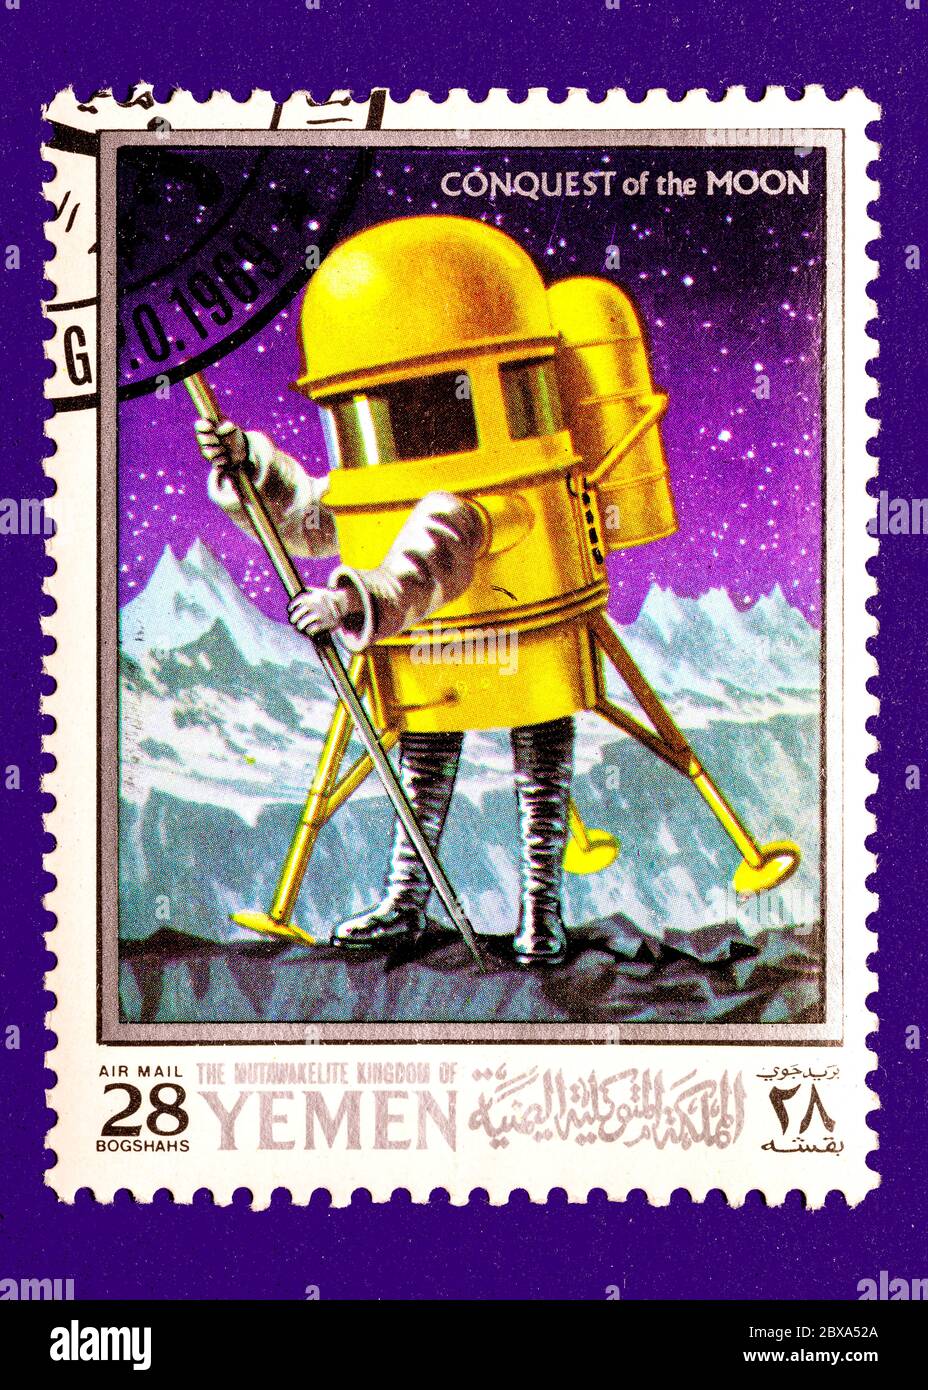 Vintage annullato francobollo dal Yemen circa 1969. Presenta scene di viaggio spaziale della serie conquista della luna. Foto Stock